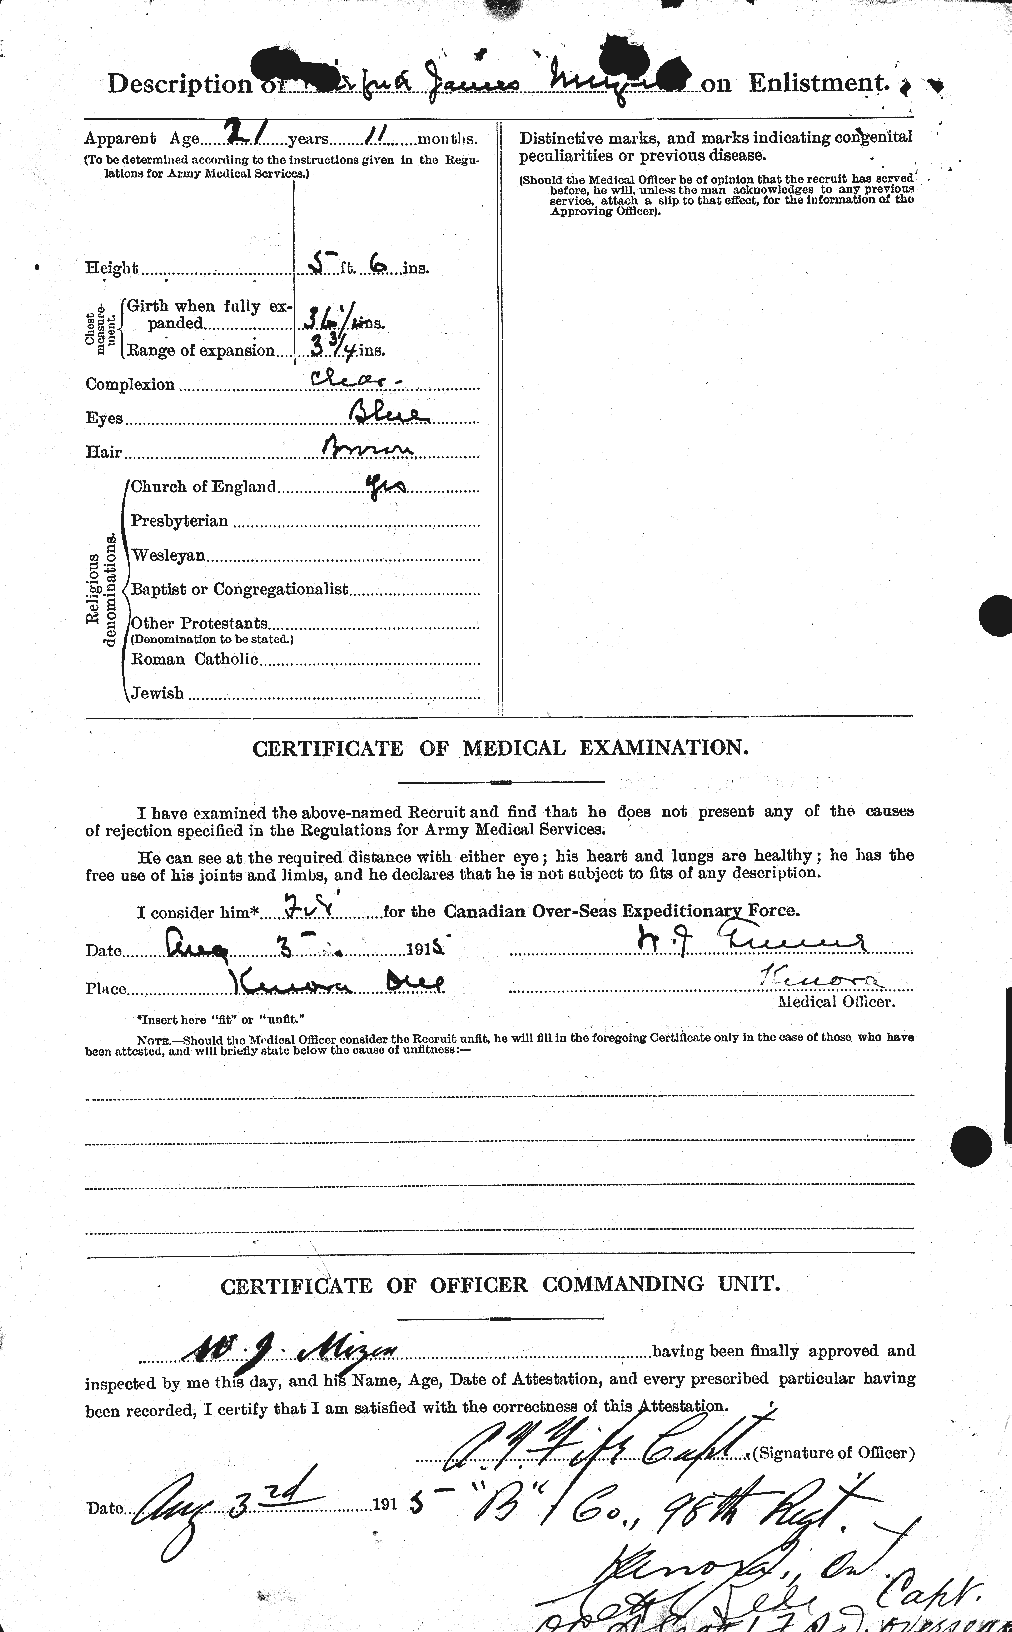 Dossiers du Personnel de la Première Guerre mondiale - CEC 496873b